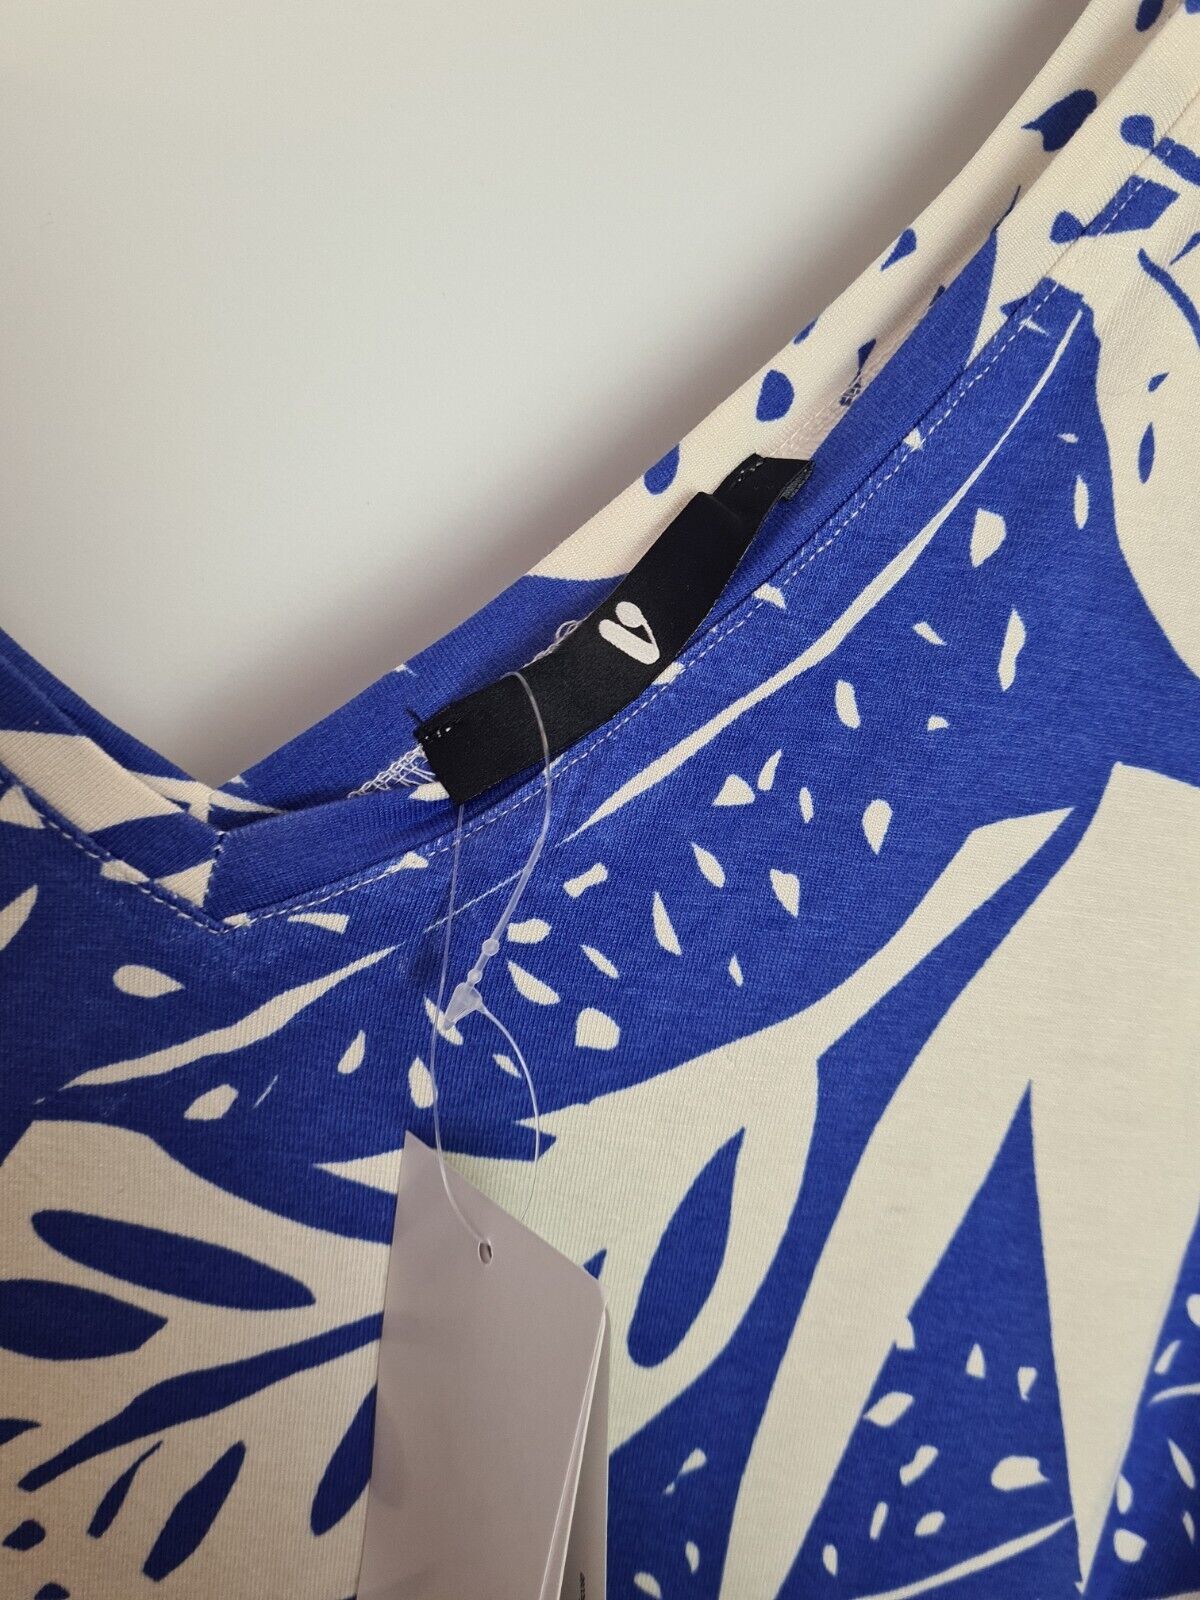 Blue And White Leaf Design Sleeveless V Neck Dress Size 16 **** V232